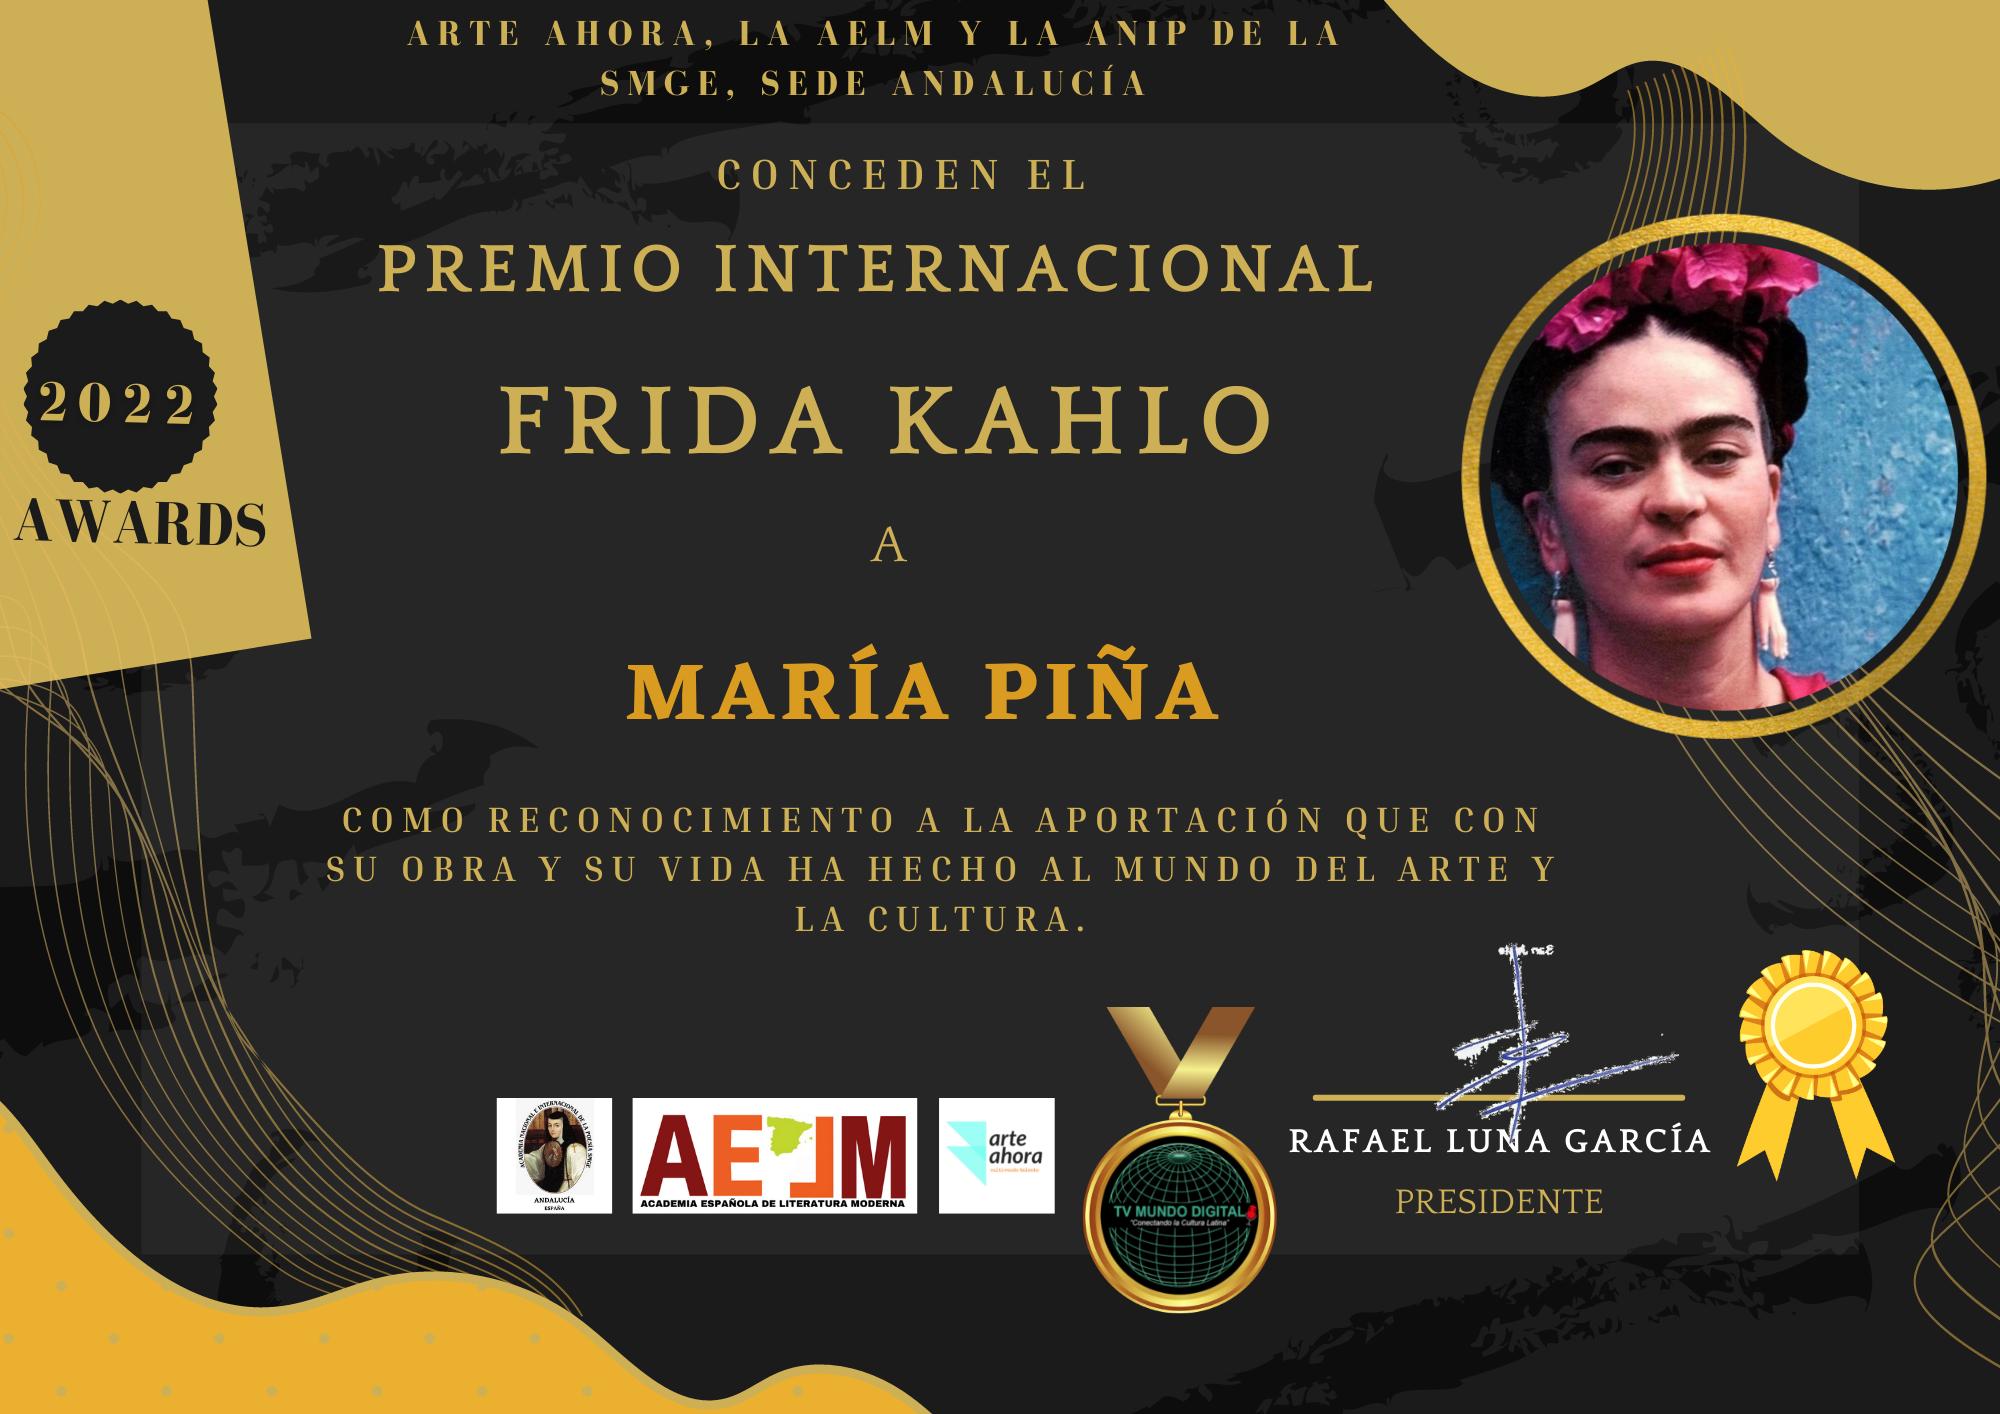 Conceden el Premio Internacional Frida kahlo a la poeta hispano-dominicana María Piña en los Art  Awards 2022